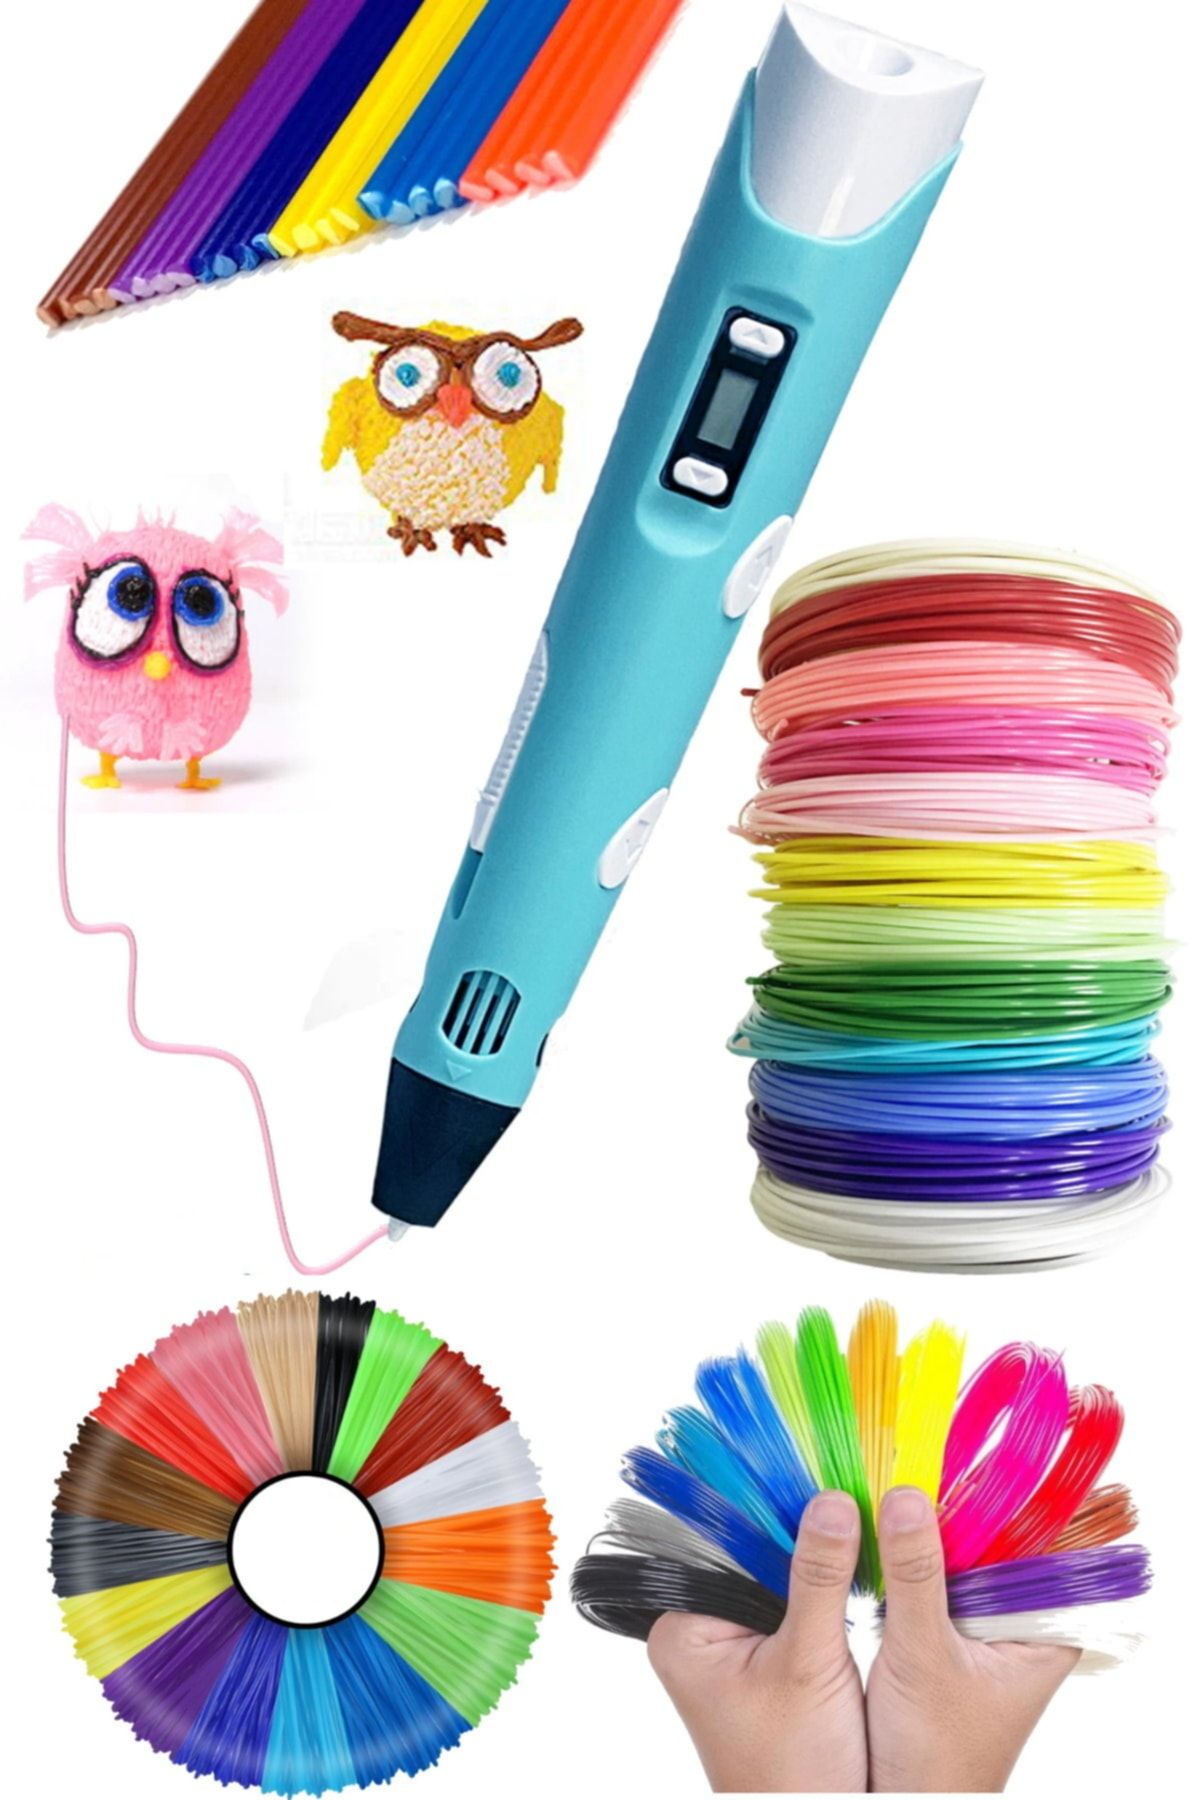 Utelips Her Yaşa Uygun Hobi Eğitimi Eğlenceli Üç Boyutlu Yazıcı Kalemi Ve 20 Renk X 5 Metre Filament Seti